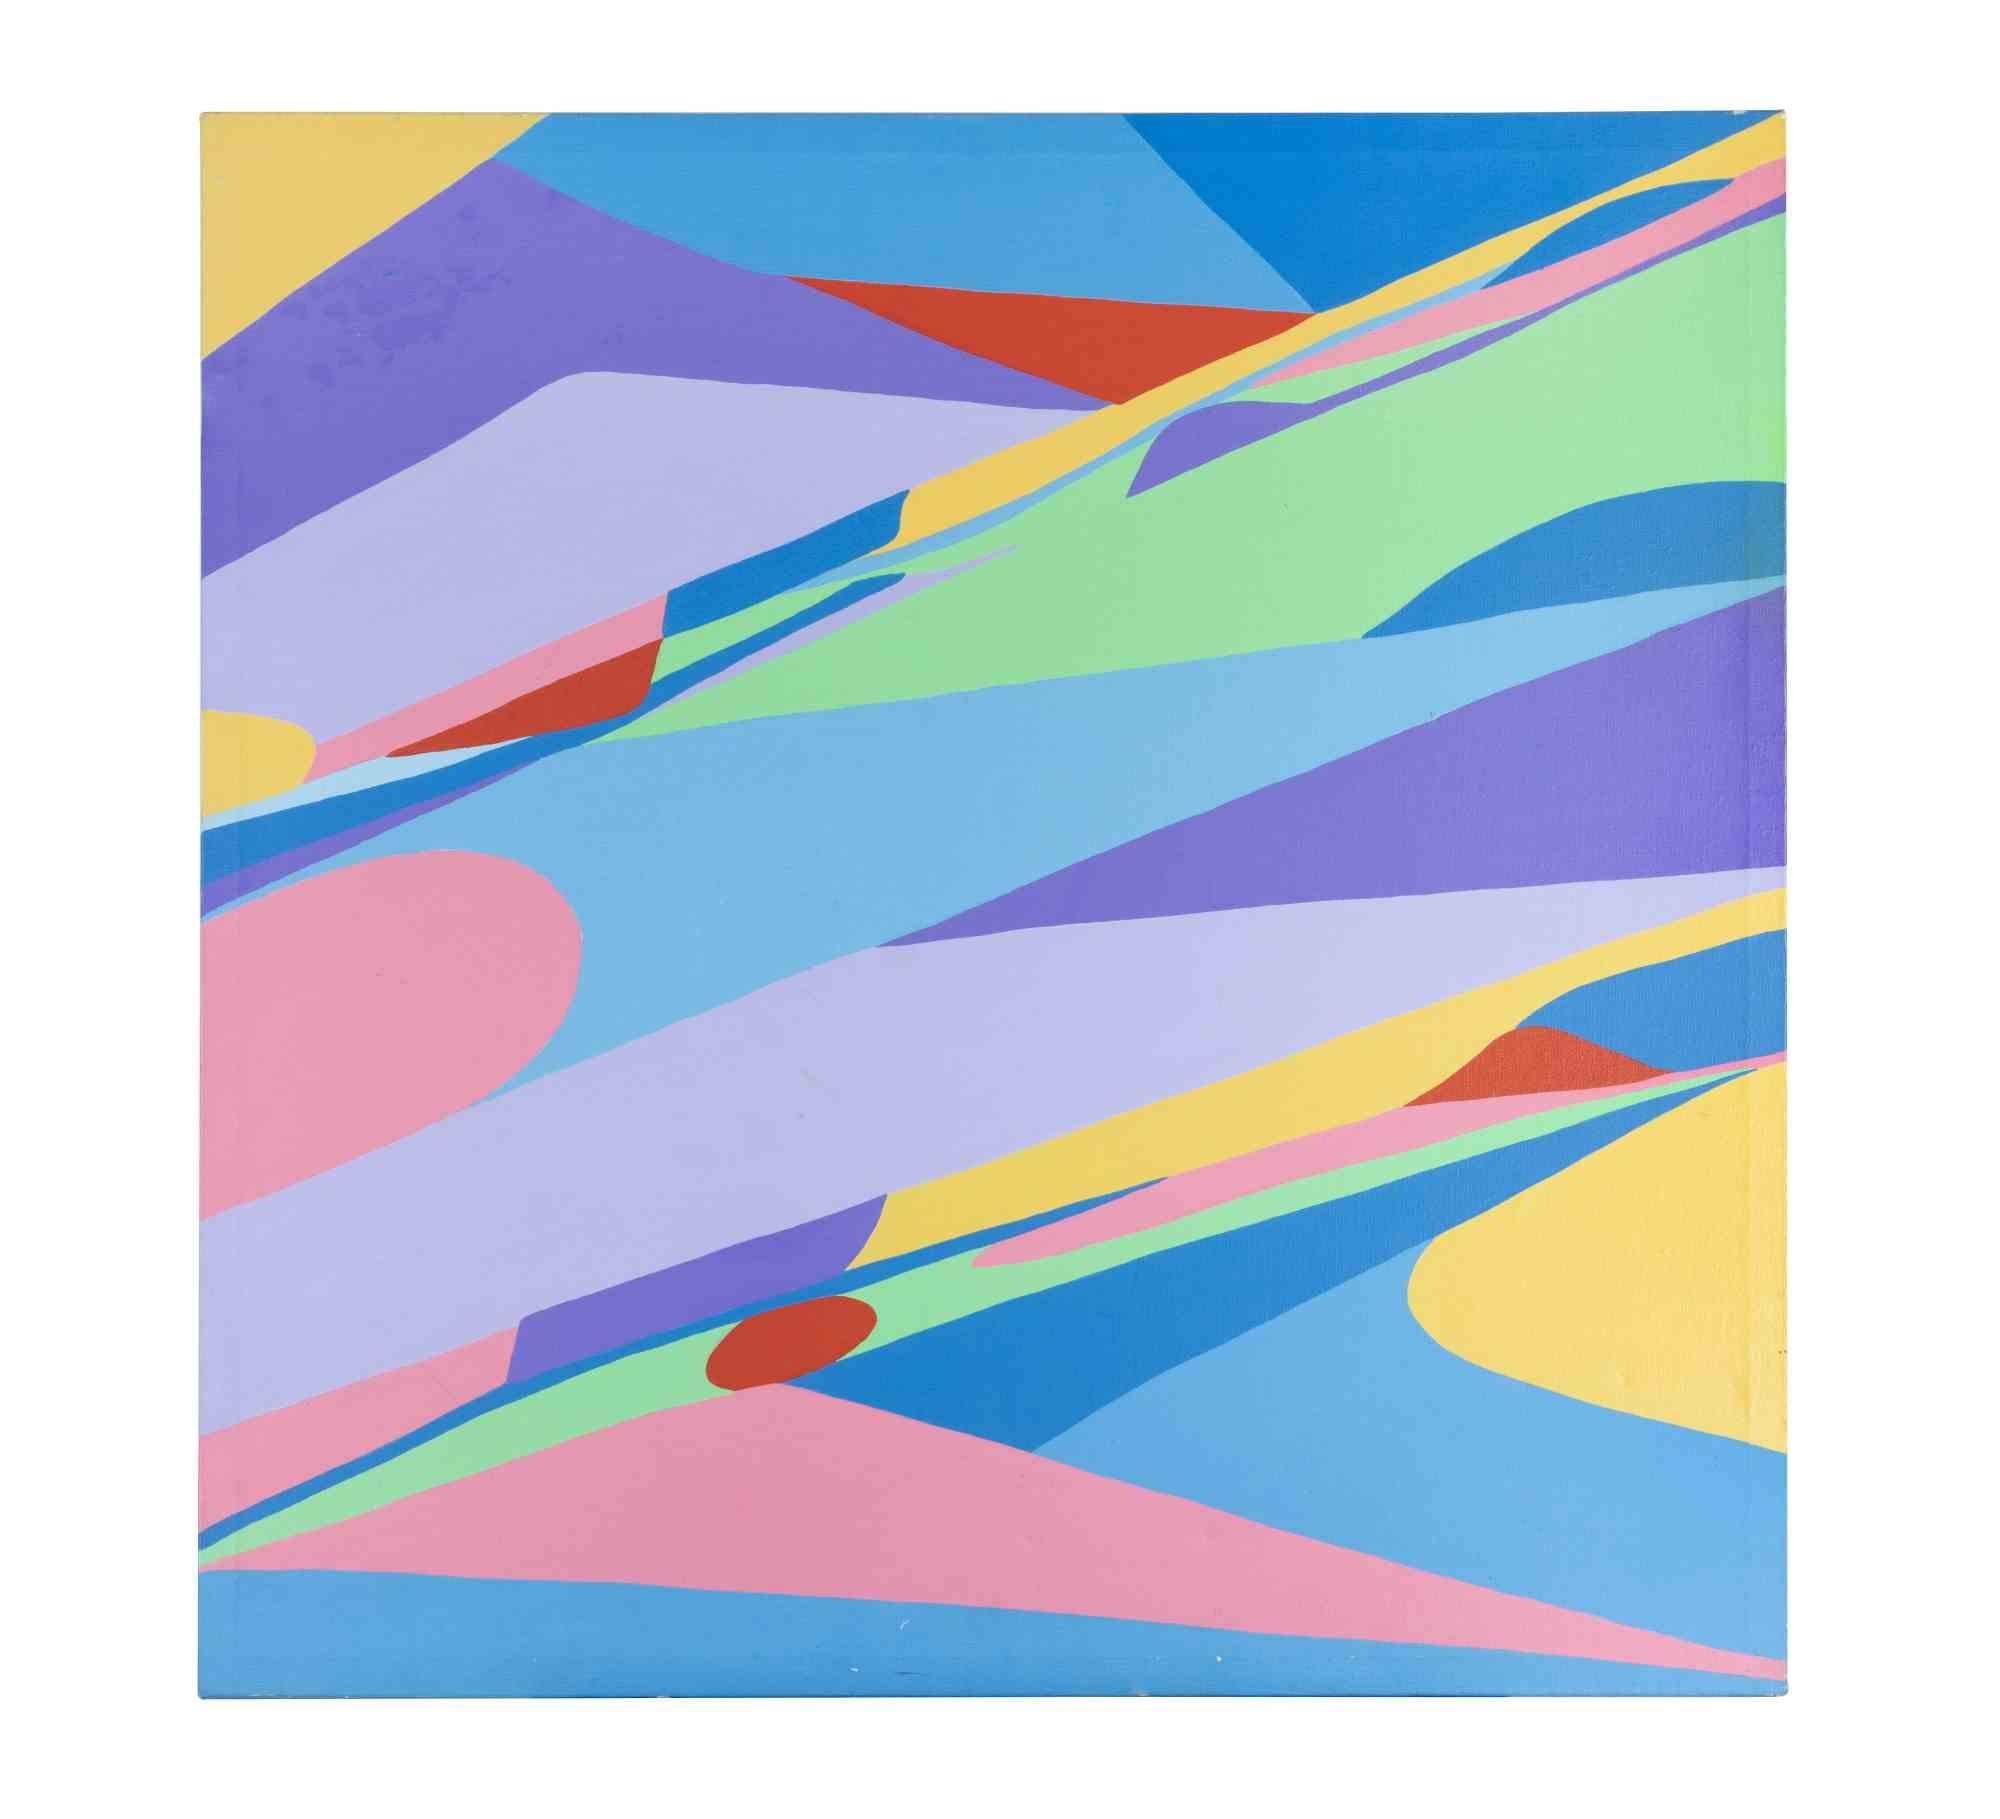 Polychrome surface 7610 ist ein zeitgenössisches Kunstwerk von Genny Puccini aus dem Jahr 1976.

Gemischte farbige Acrylmalerei auf Leinwand.

Handsigniert und datiert auf der Rückseite.

